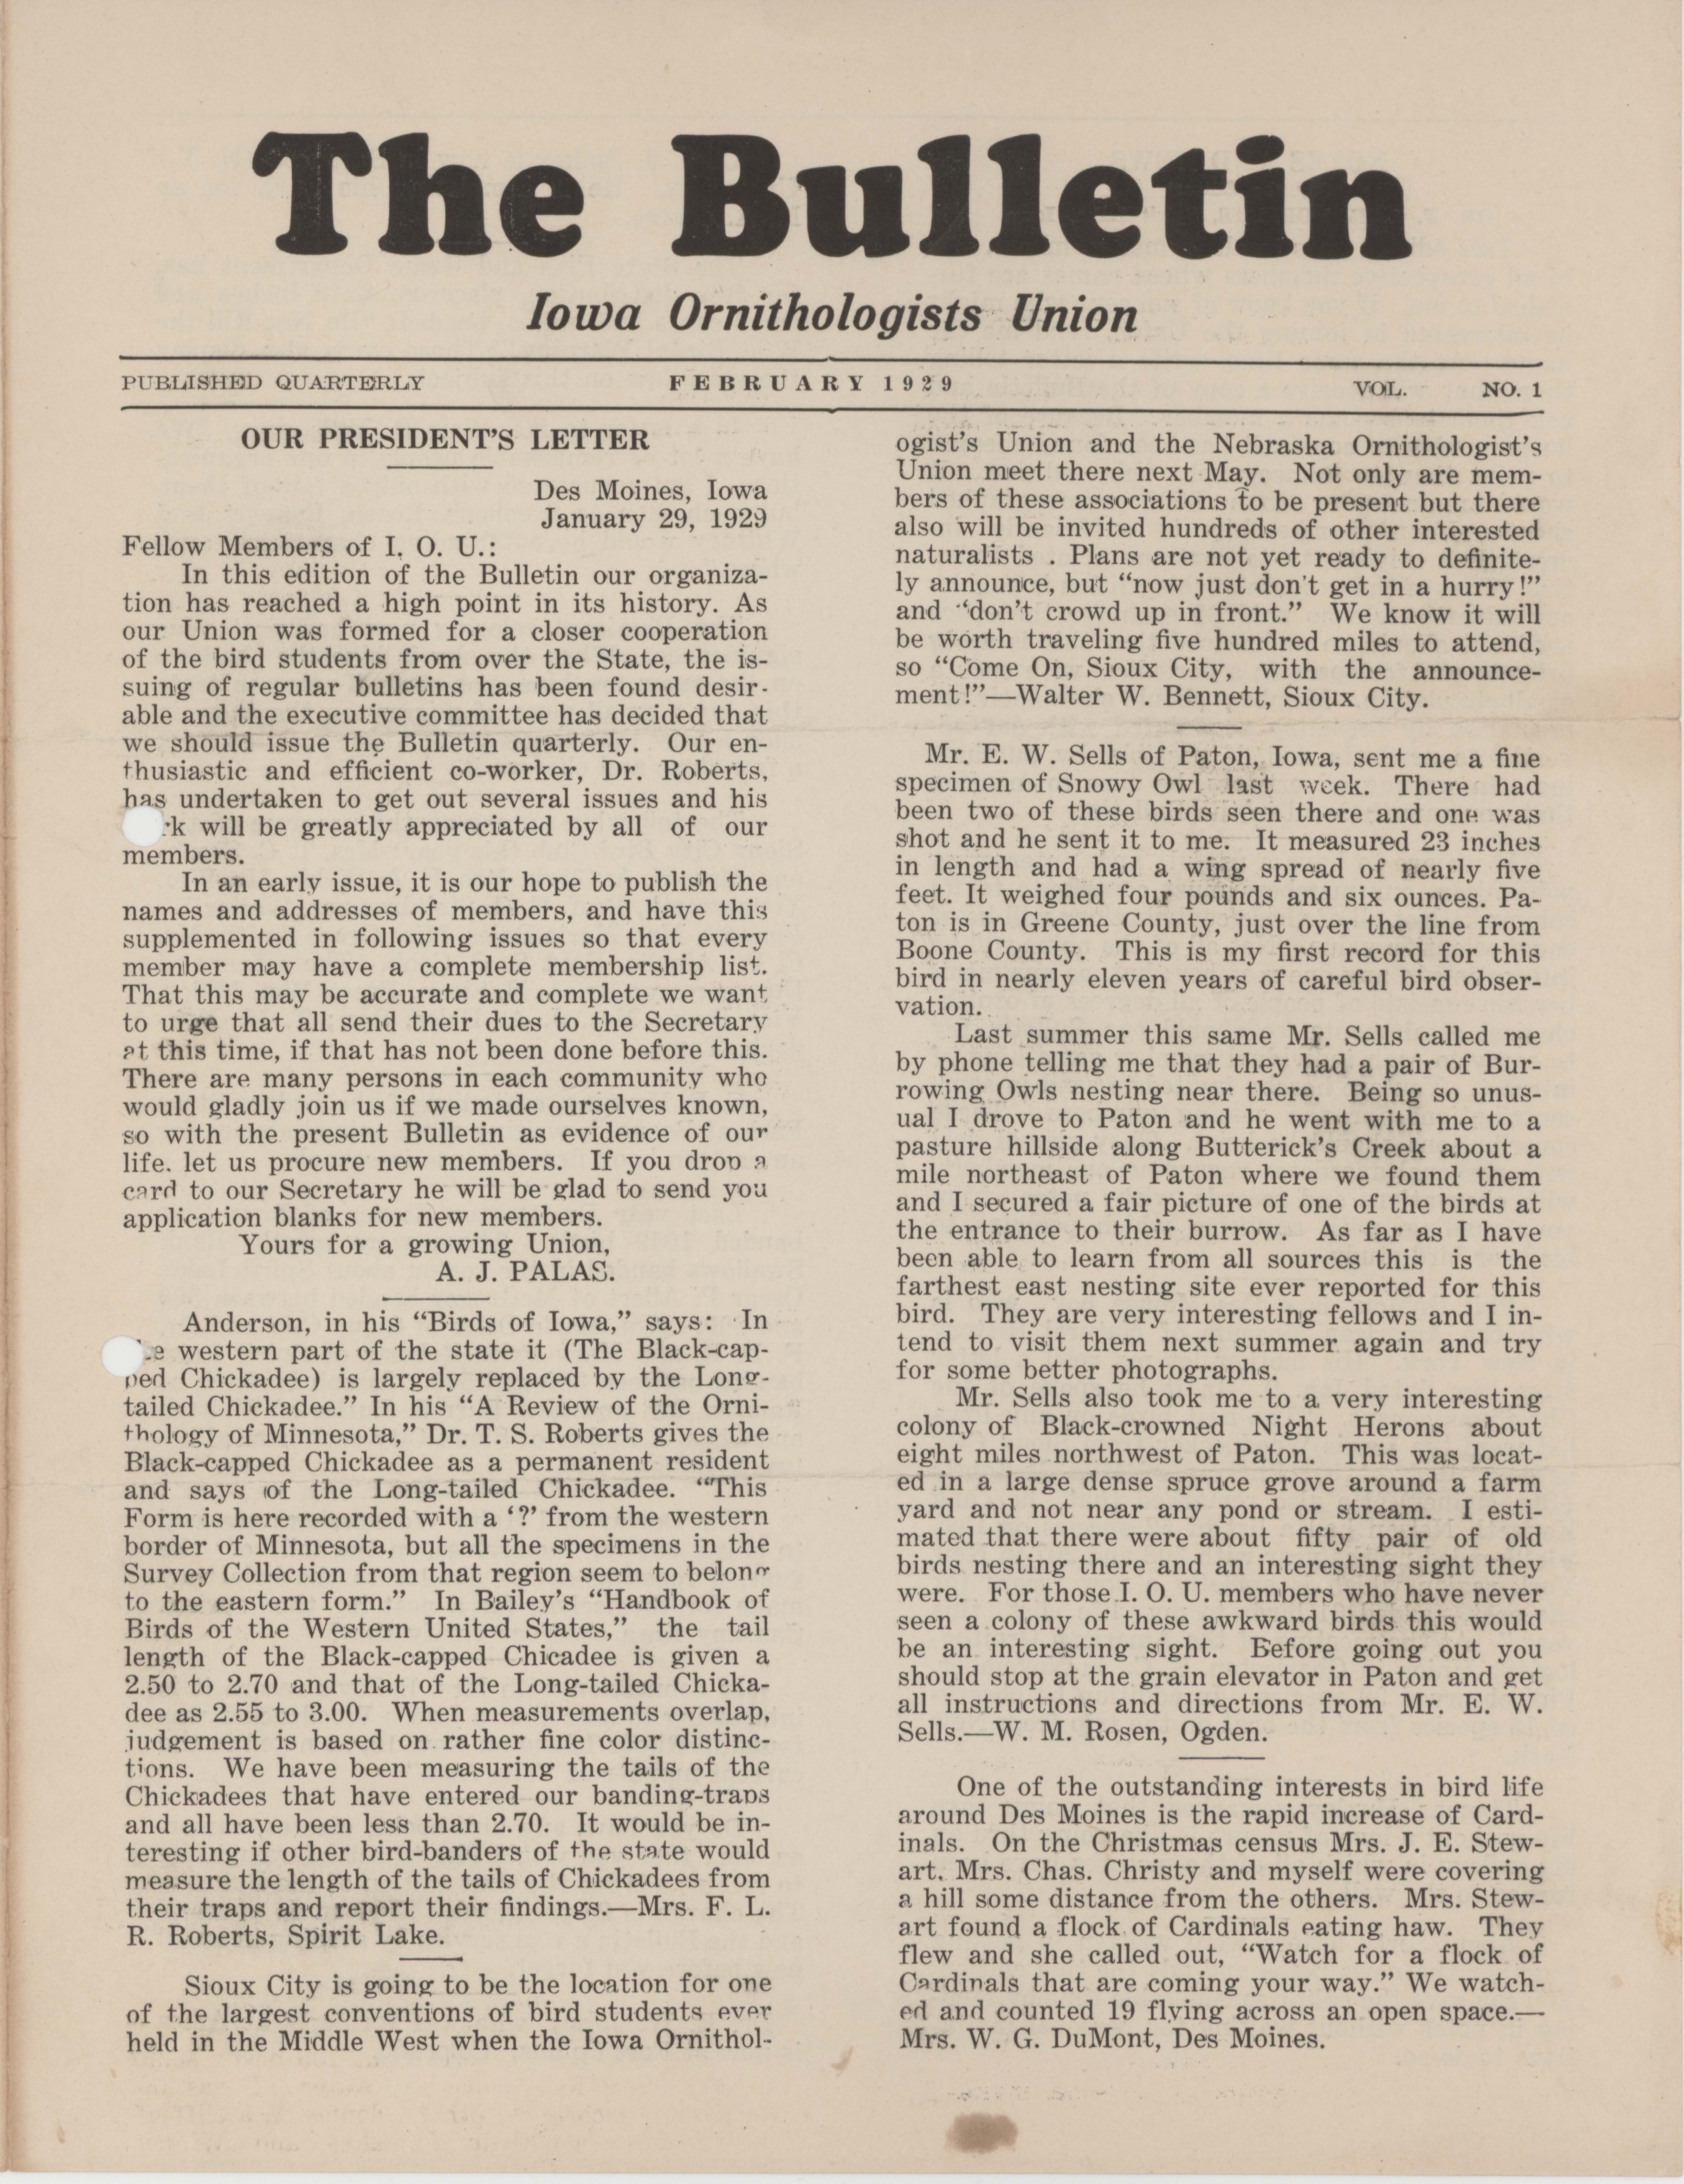 Bulletin (Iowa Ornithologists Union), Number 1, February 1929